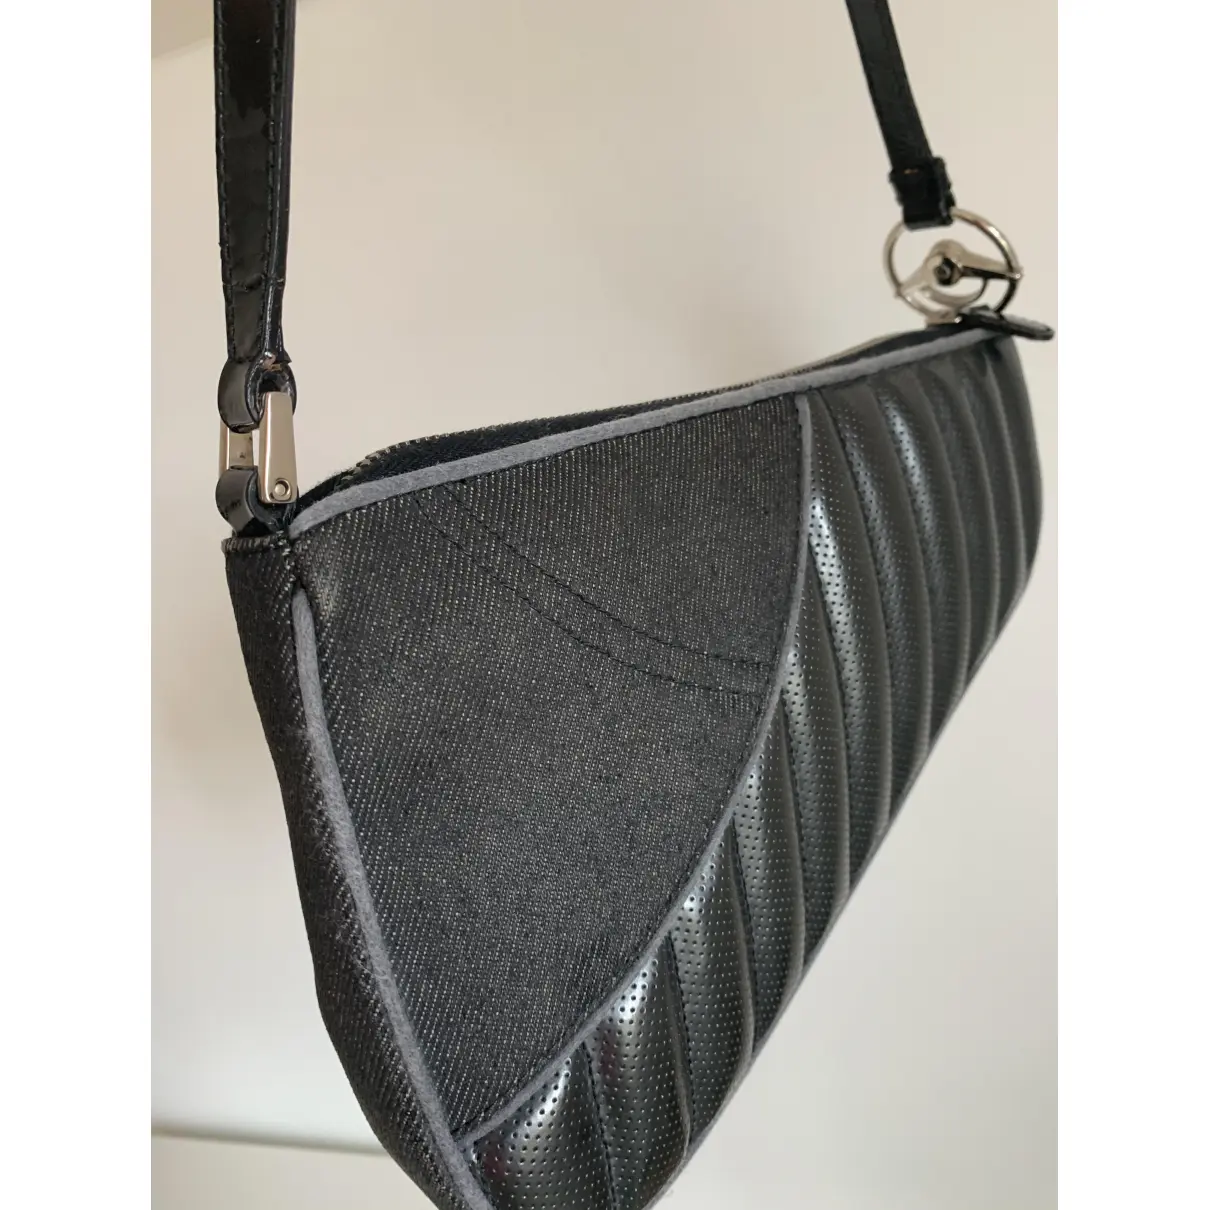 Buy Dior Cadillac  leather handbag online - Vintage